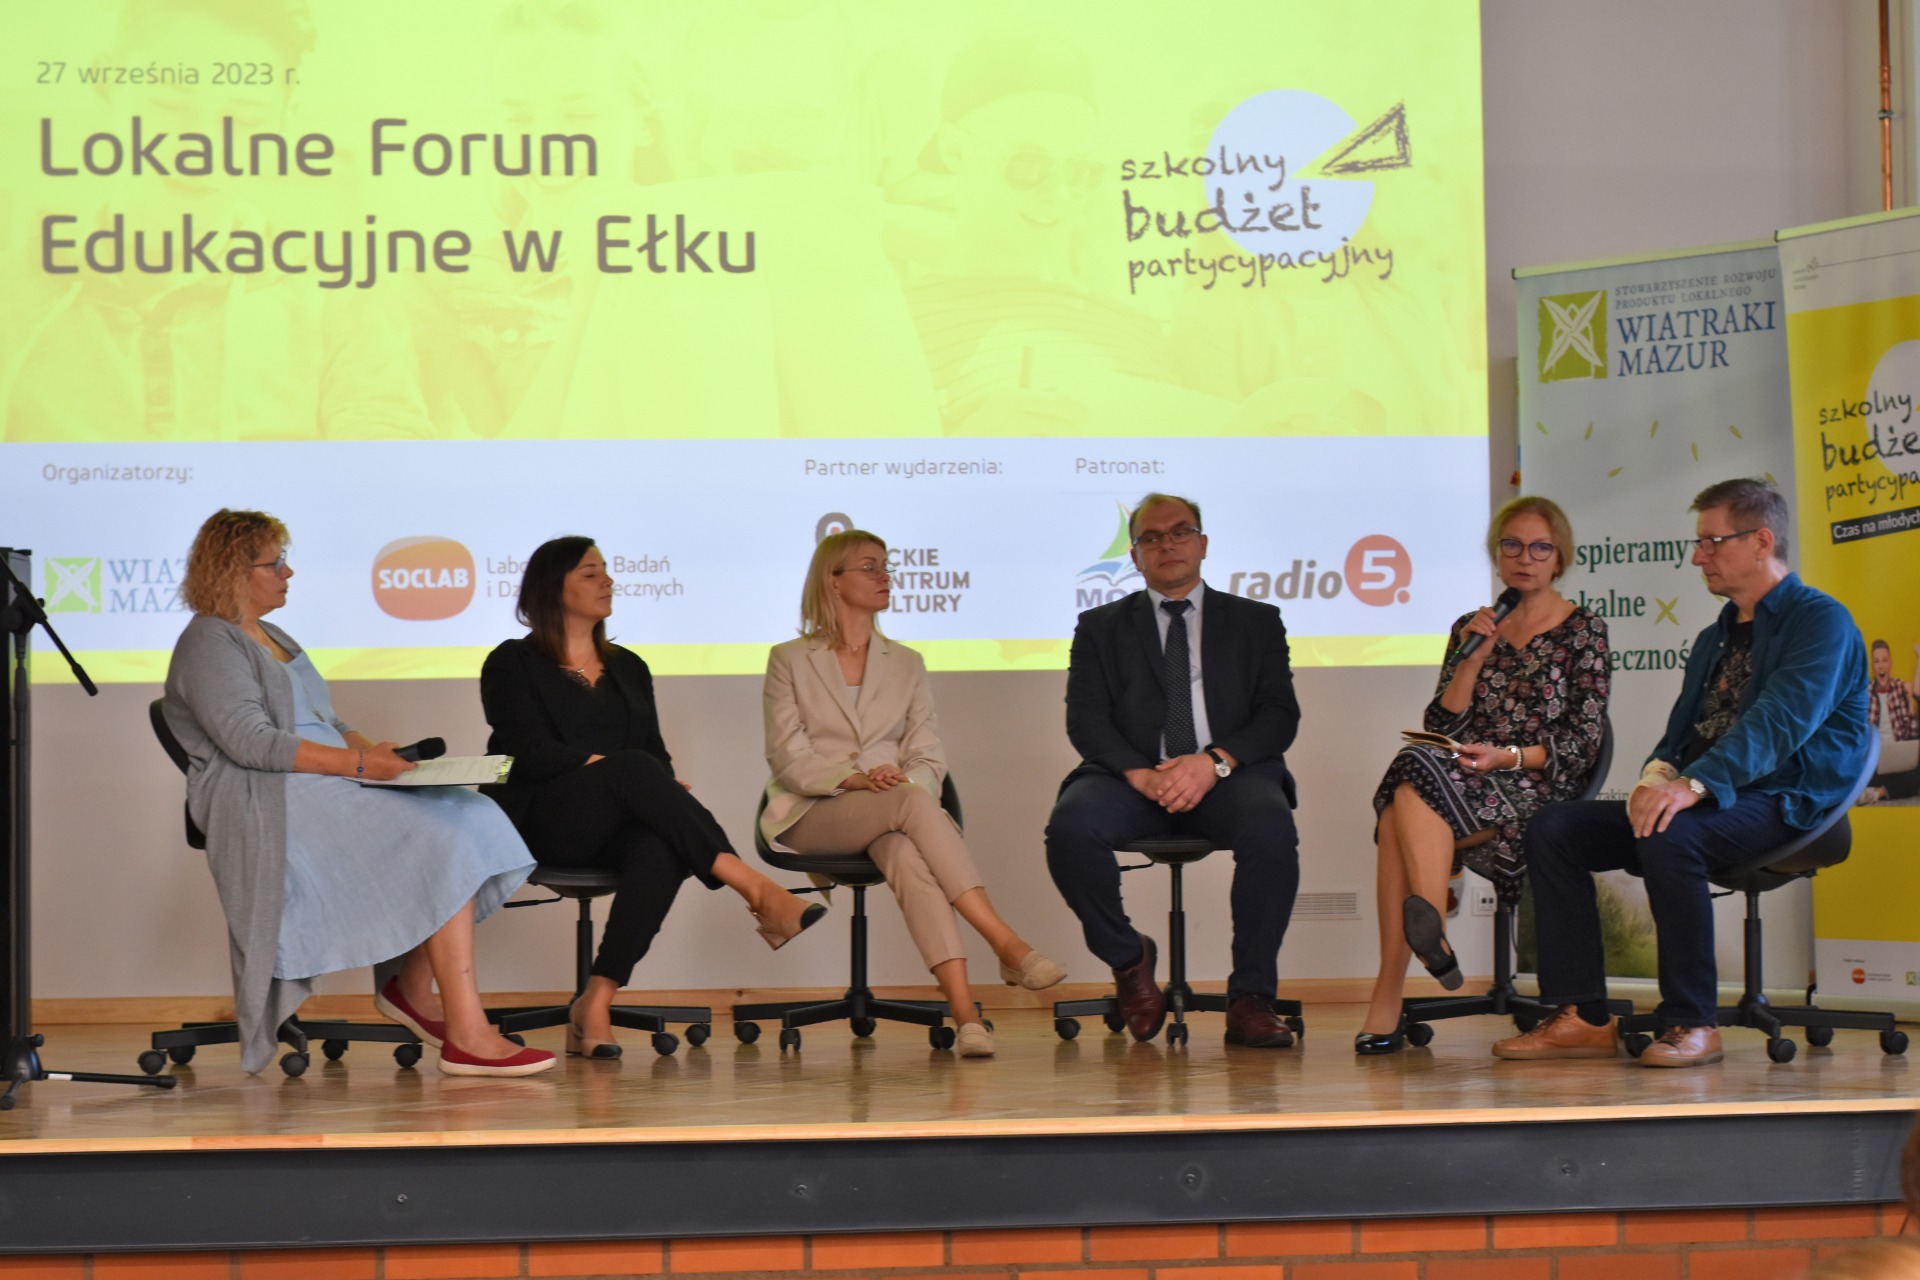 Podsumowanie projektu Szkolny Budżet Partycypacyjny podczas Lokalnego Forum Edukacyjnego w Ełku - Obrazek 5